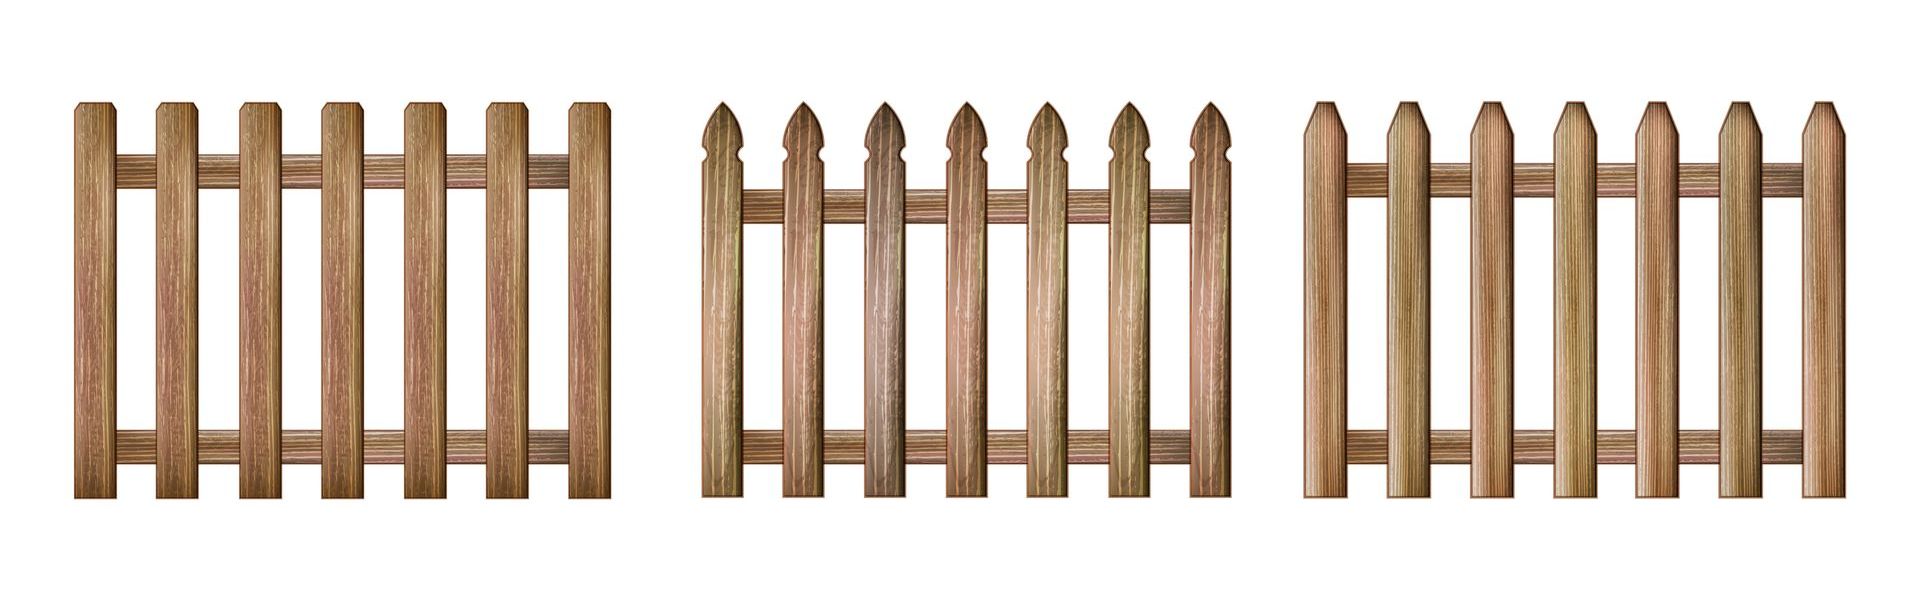 wood picket fence installation illinois